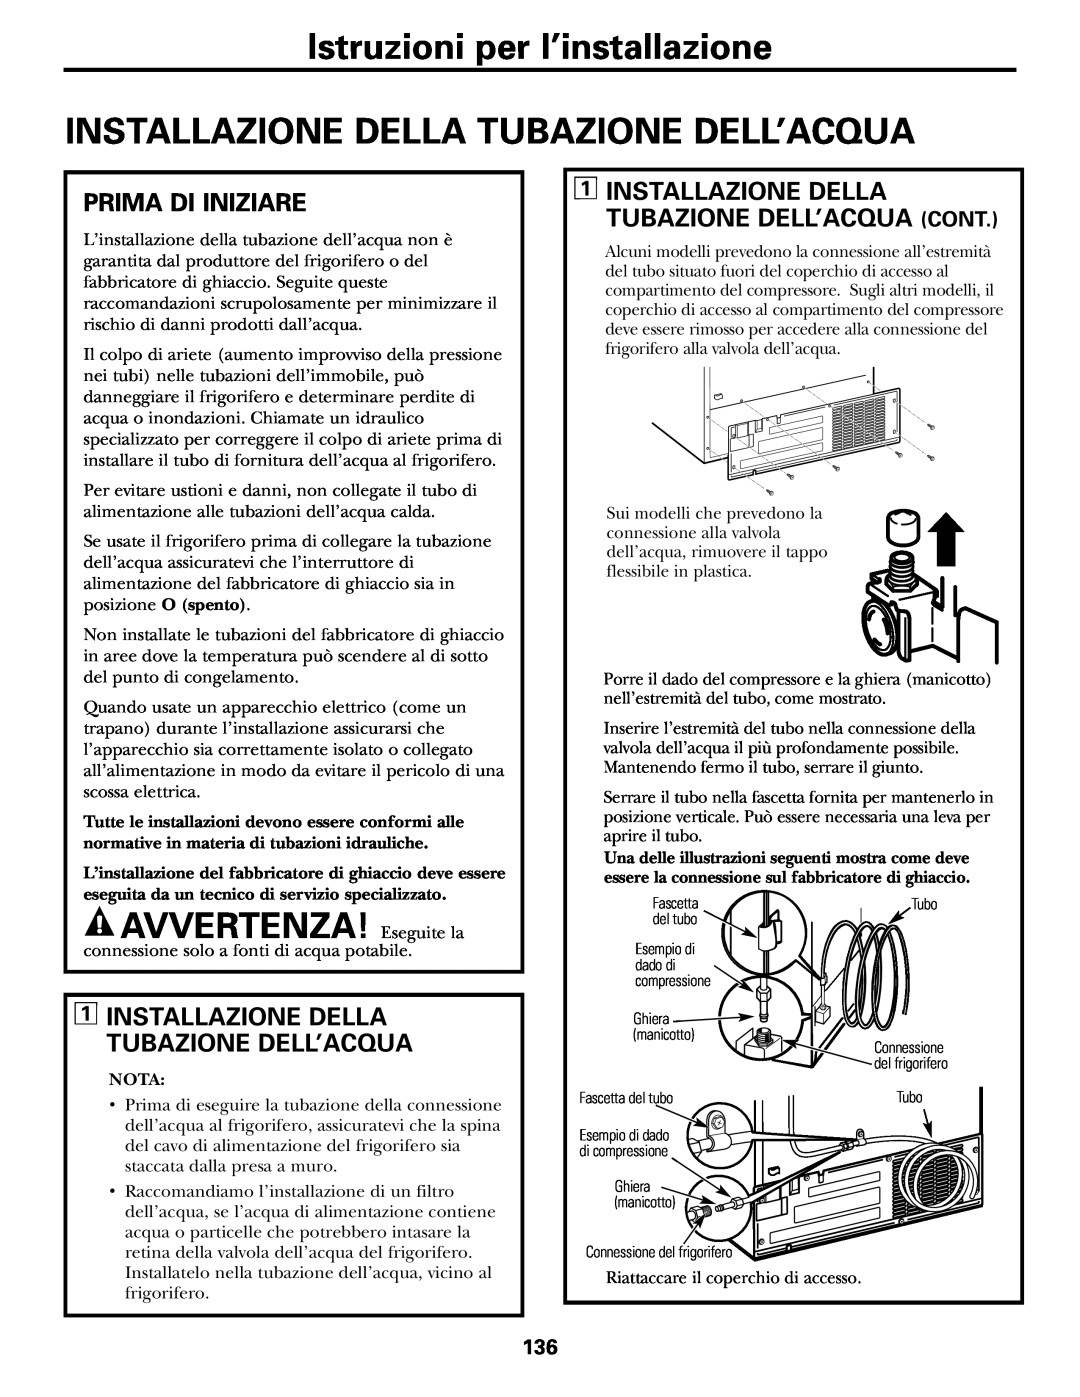 GE 200D2600P031 operating instructions Installazione Della Tubazione Dell’Acqua, AVVERTENZA! Eseguite la, Prima Di Iniziare 